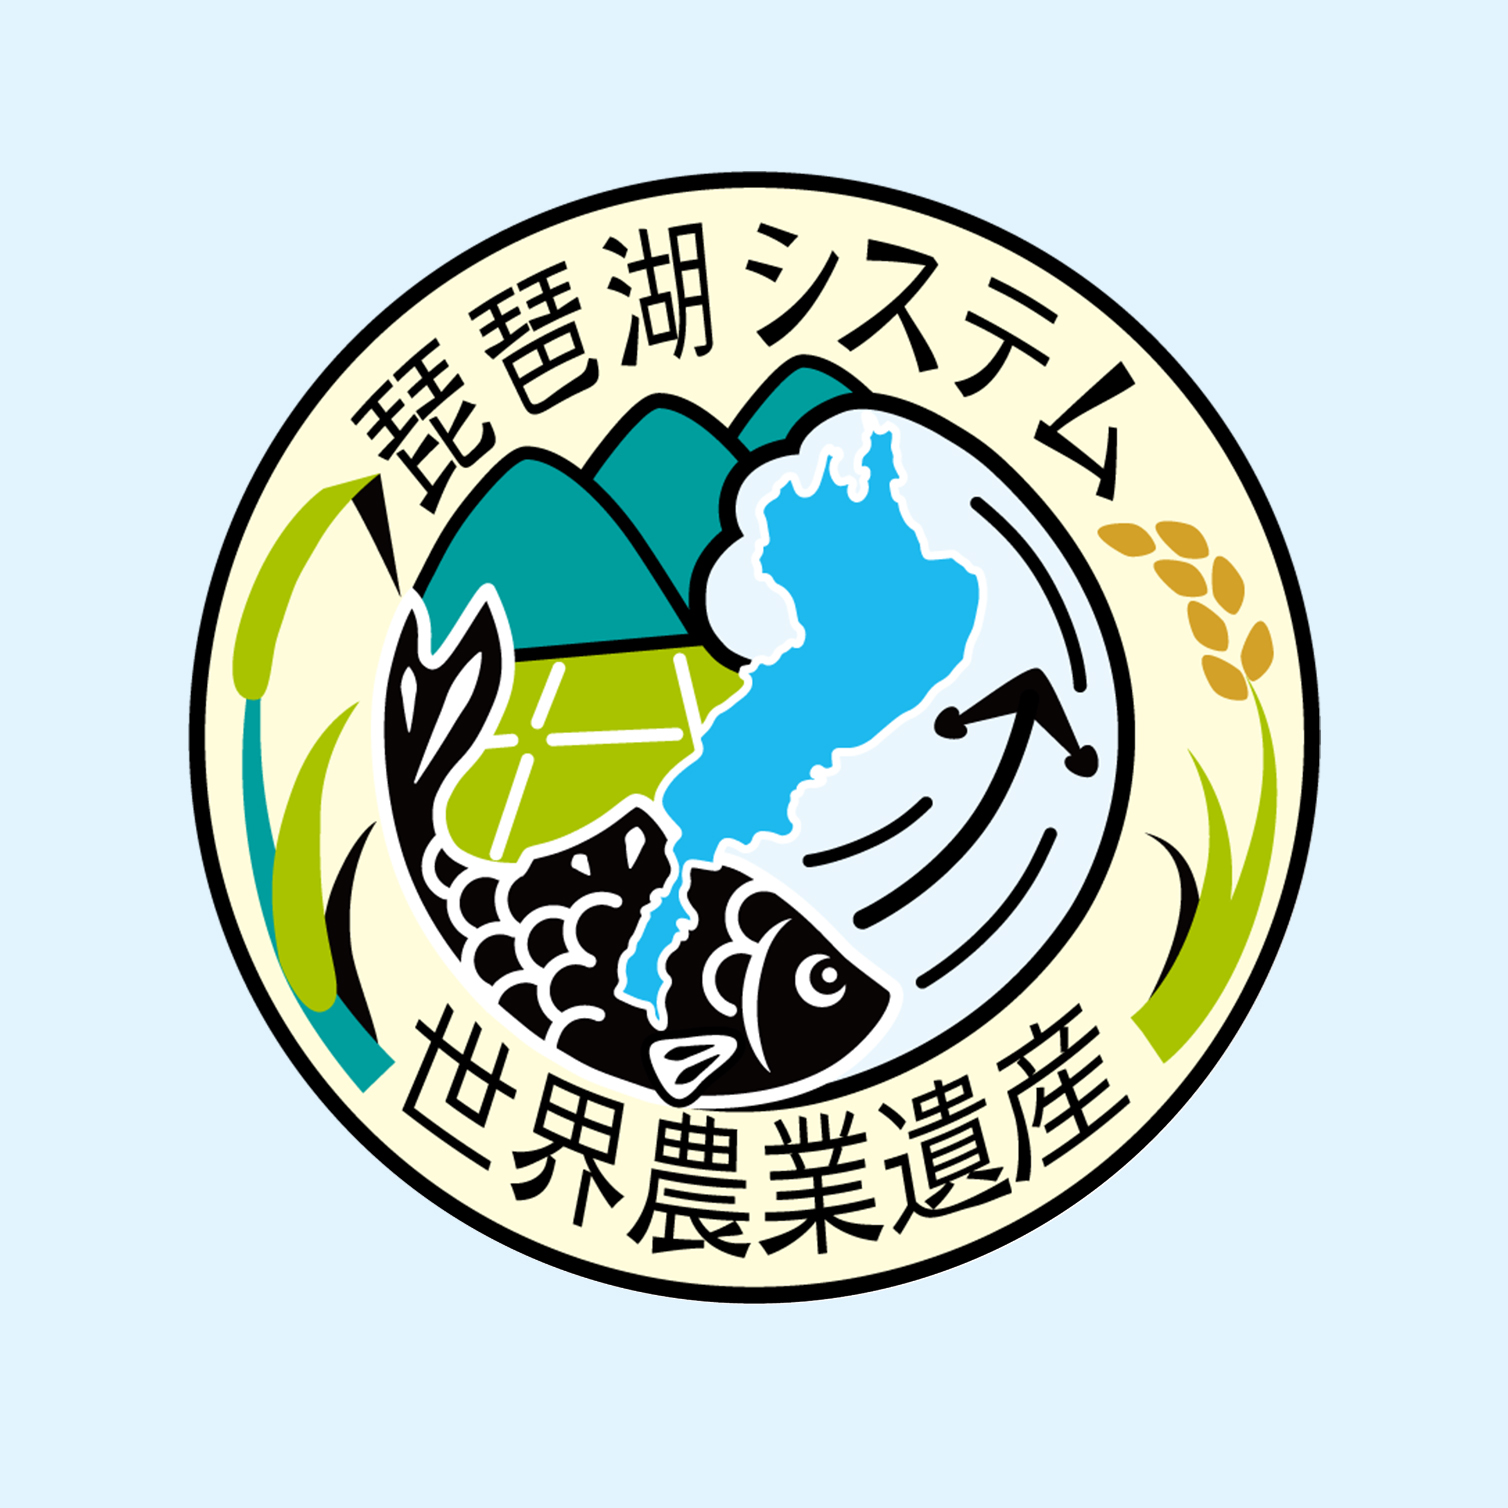 日本農業遺産「琵琶湖システム」